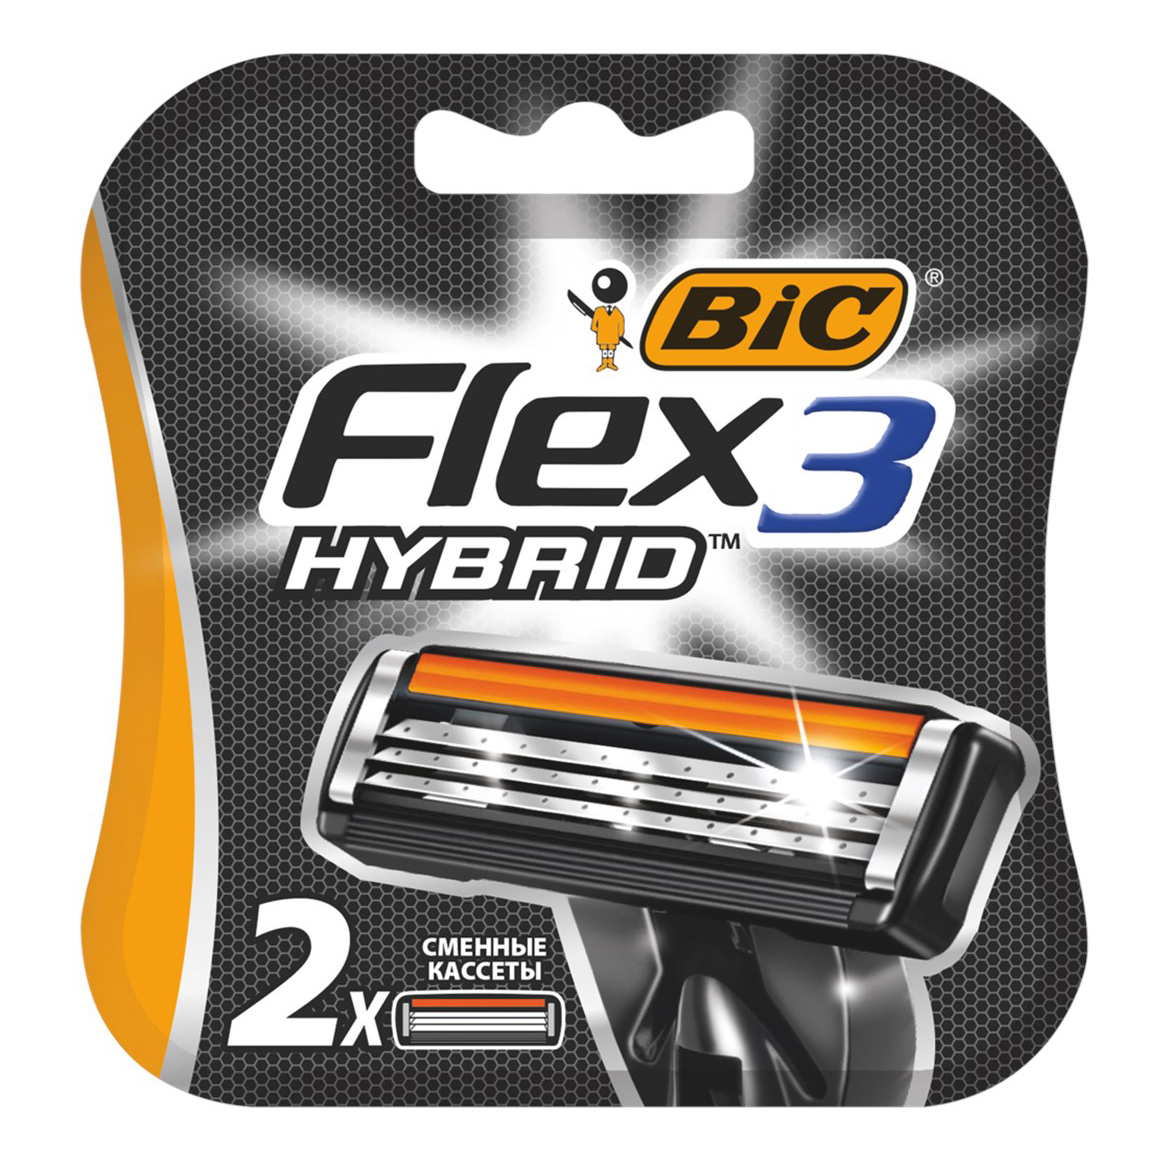 Сменная кассета Bic Flex 3 Hybrid 3 лезвия 2 шт